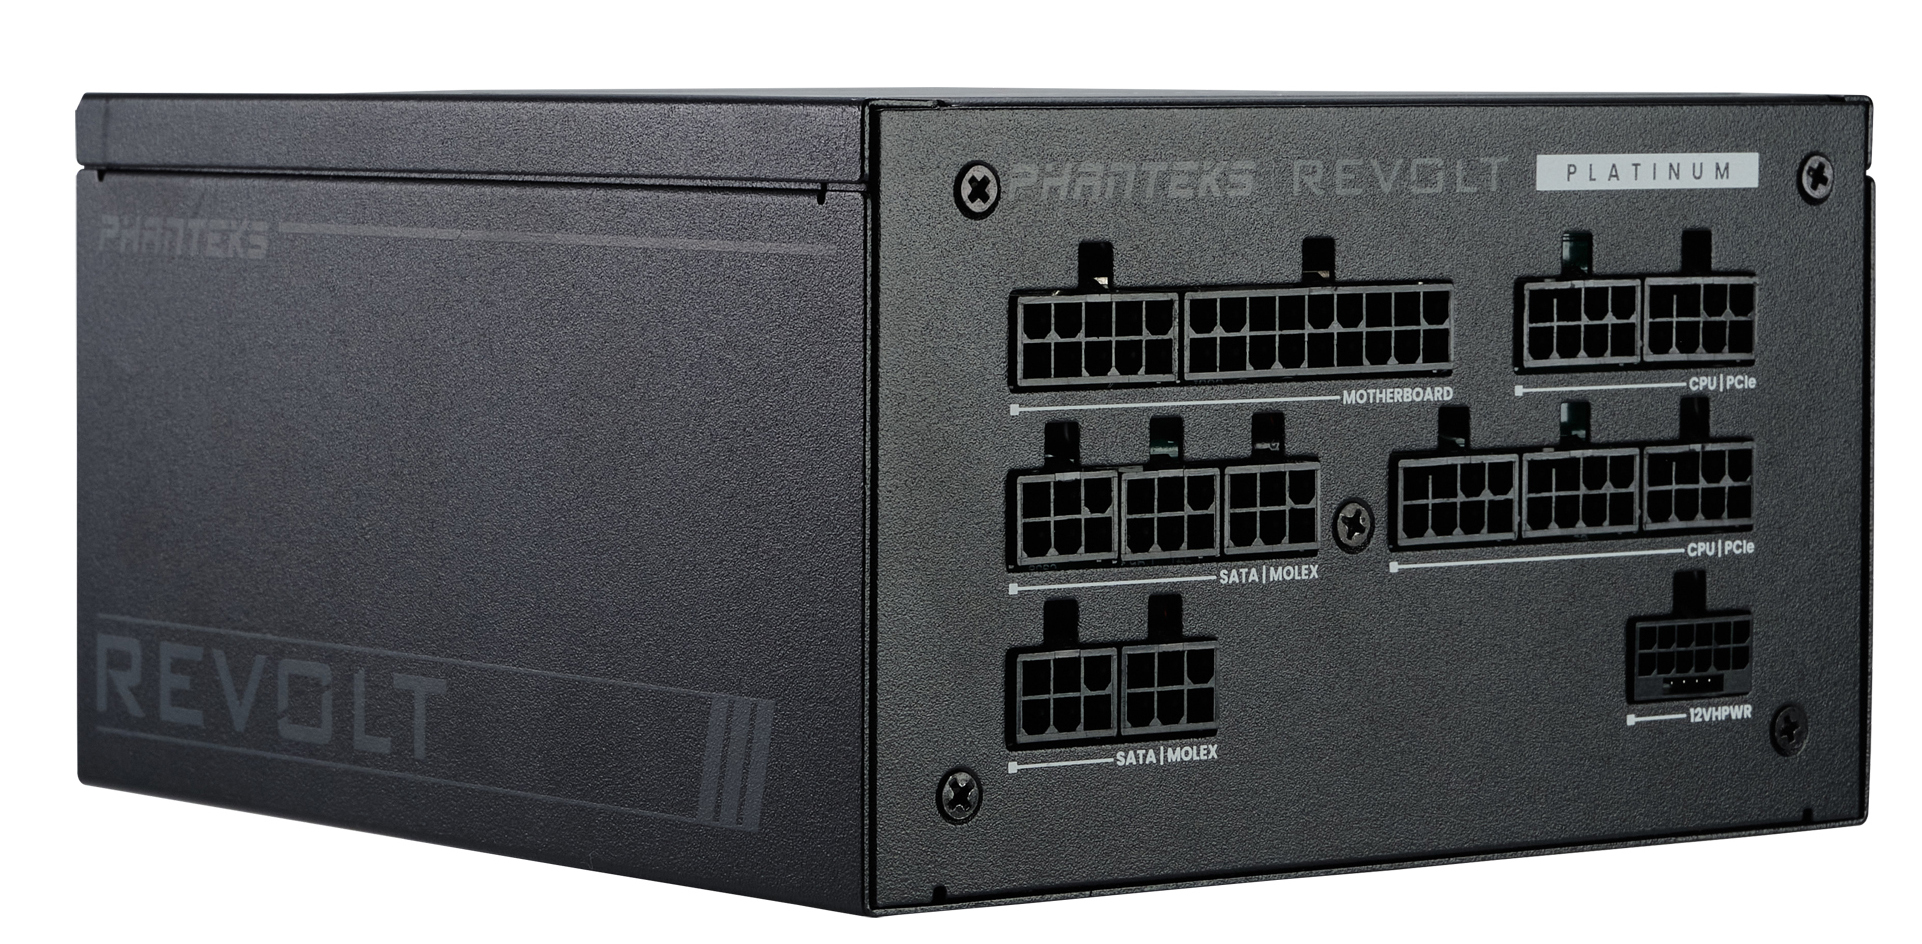 Phanteks - Fuente Modular Phanteks Revolt ATX 3.0 PCIe 5.0 1000W Platinum Preta (Sin Cables Incluídos)